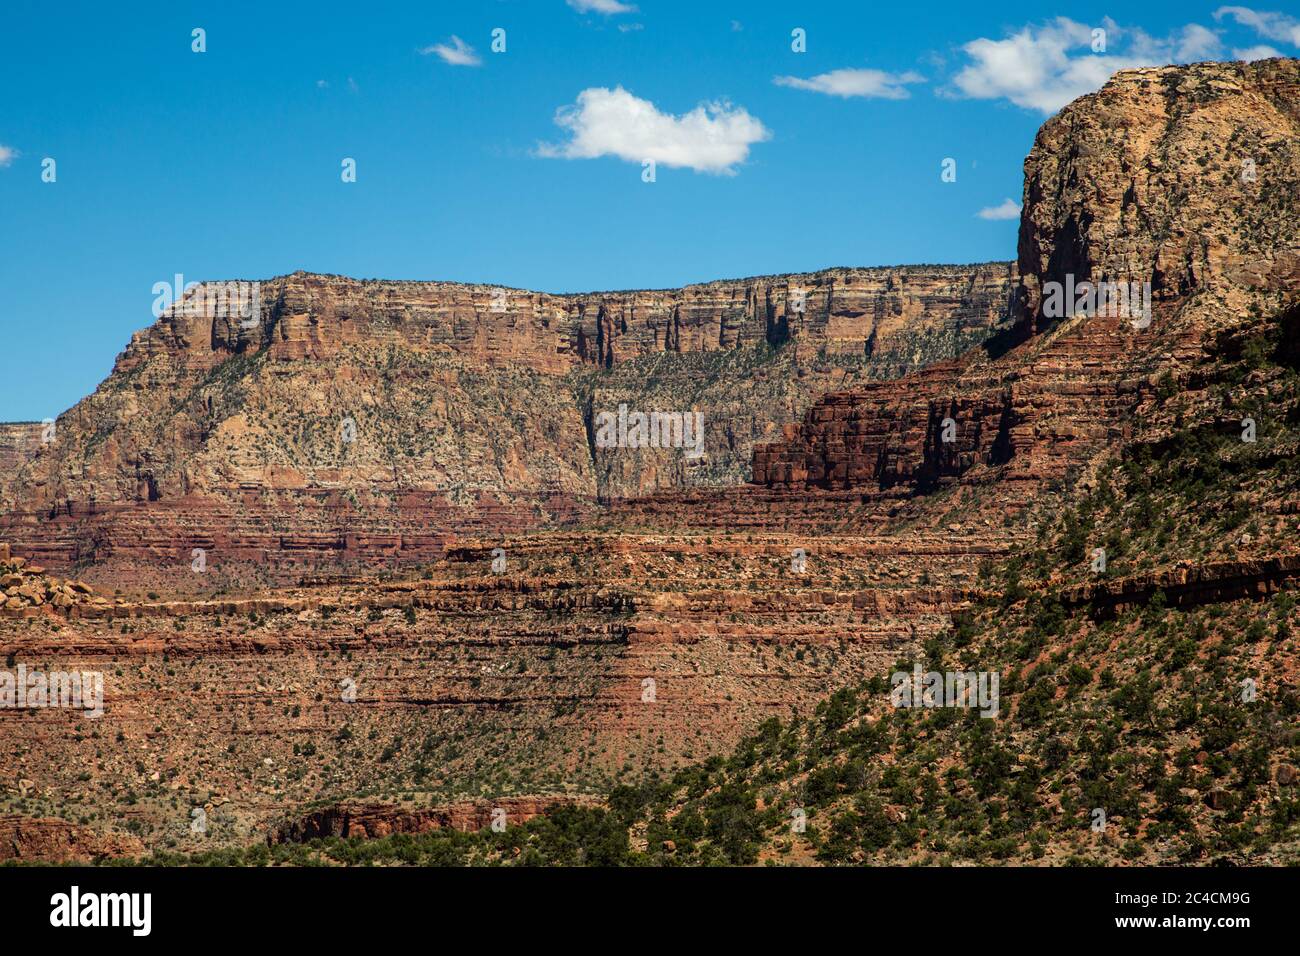 Le Grand Canyon, l'une des sept merveilles naturelles du monde. Banque D'Images